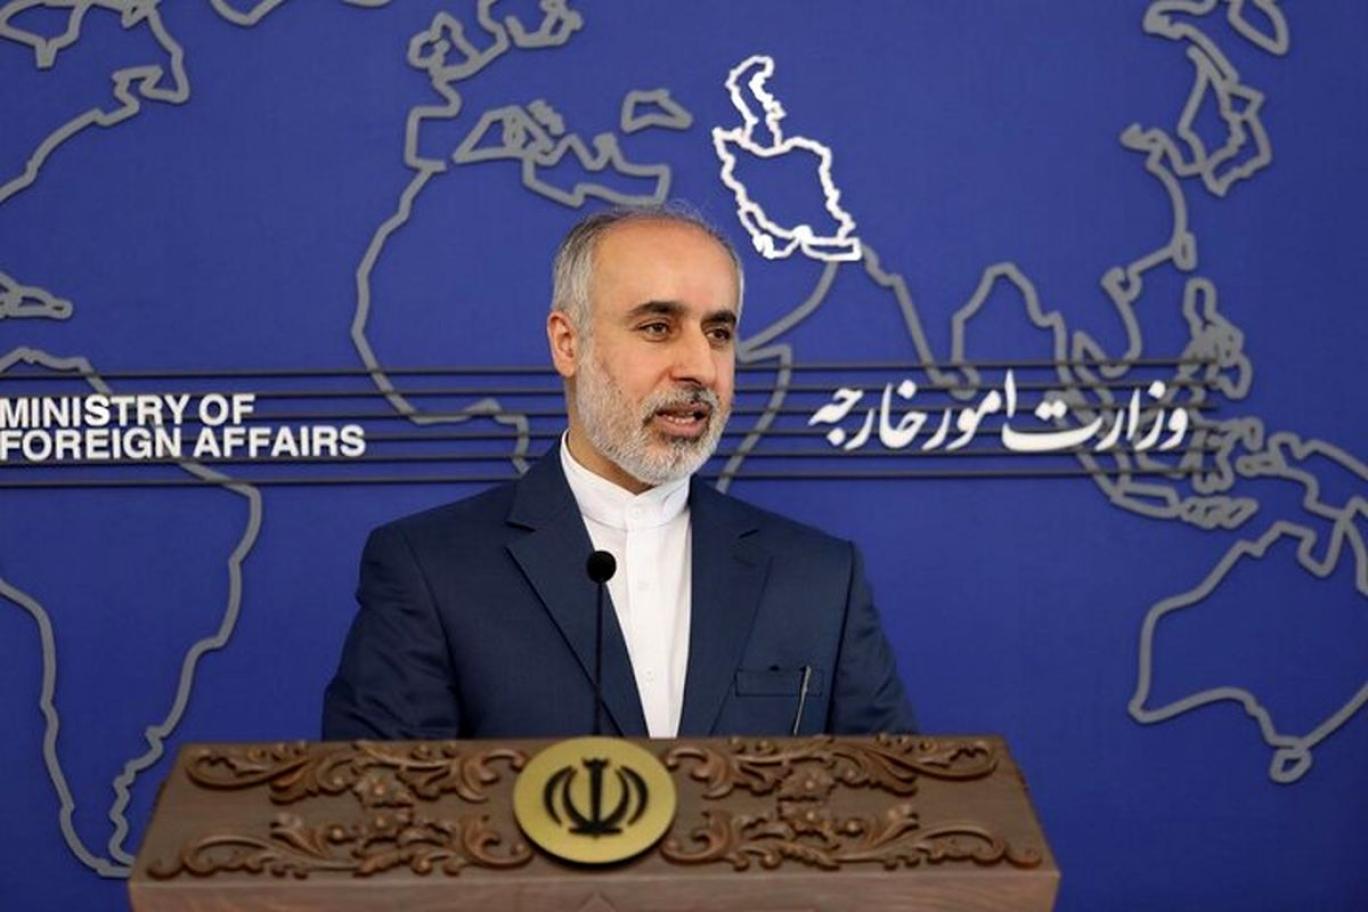 ناصر کنعانی : روابط ایران و افغانستان به هم پیوسته و جدایی ناپذیر است